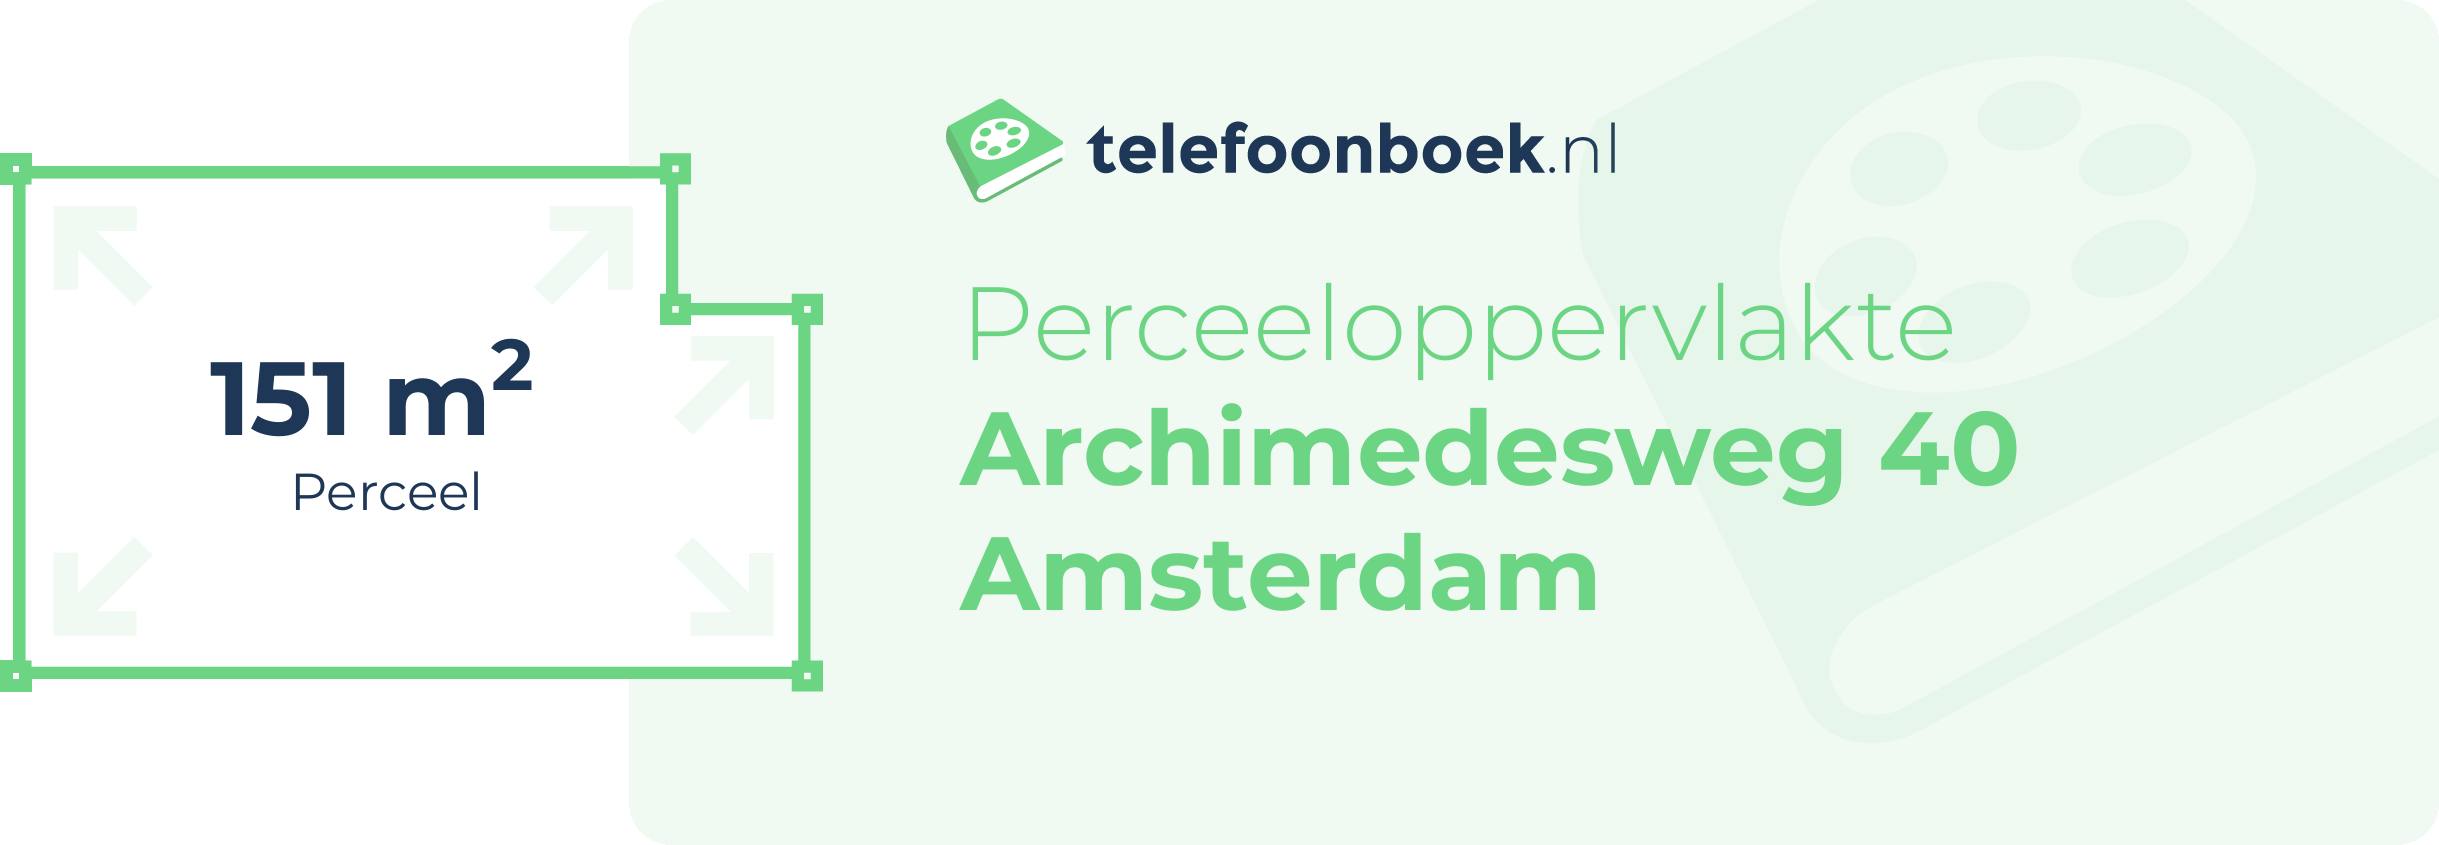 Perceeloppervlakte Archimedesweg 40 Amsterdam